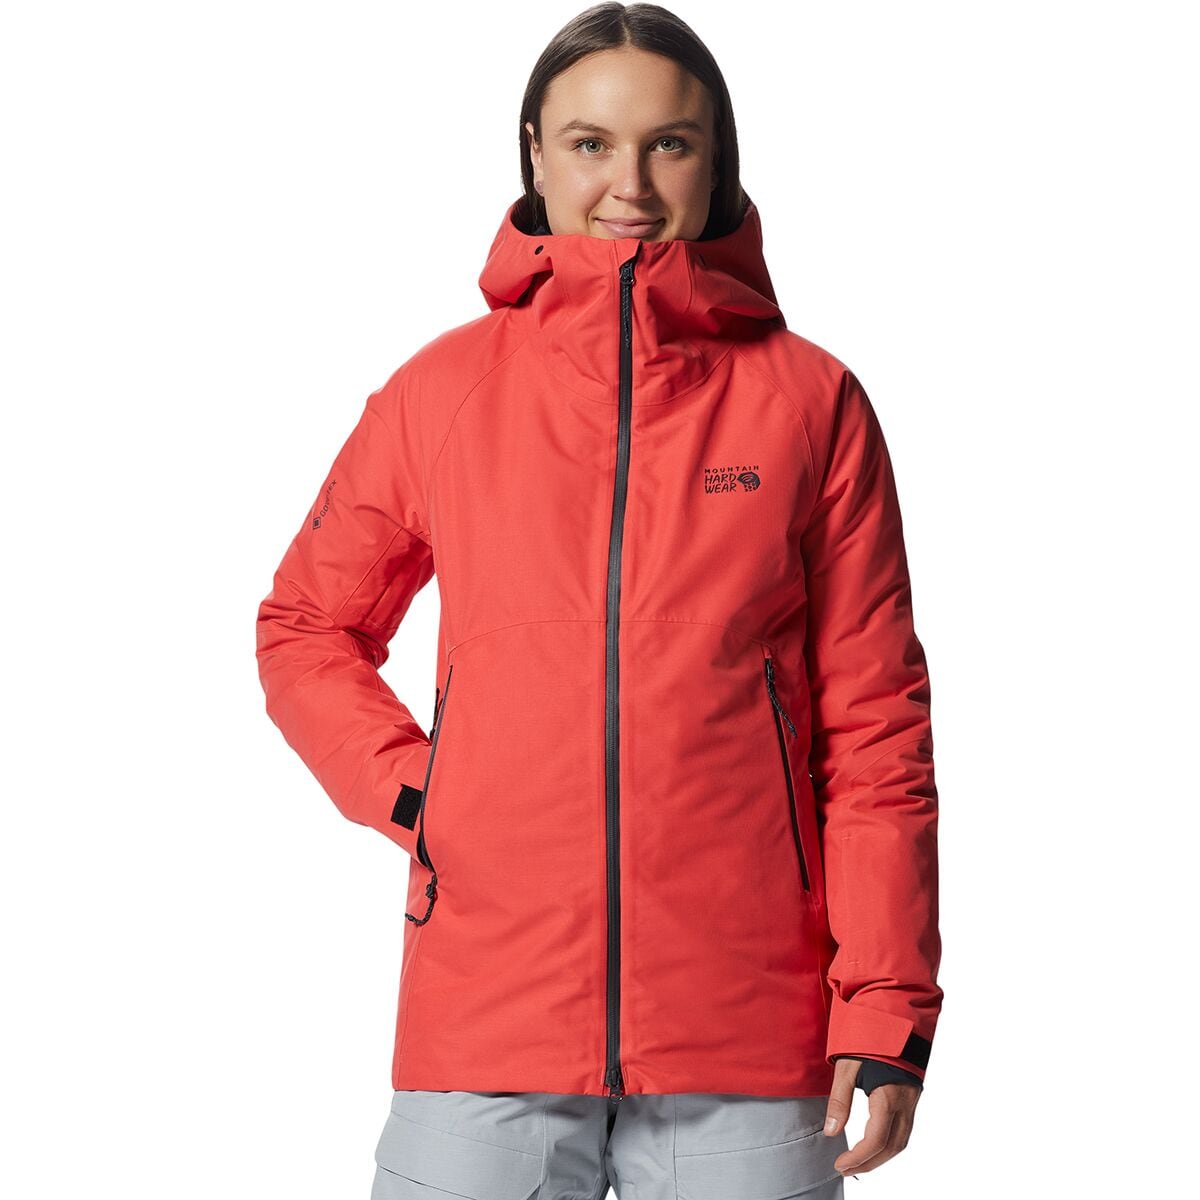 Утепленная куртка Cloud Bank GORE-TEX LT Mountain Hardwear